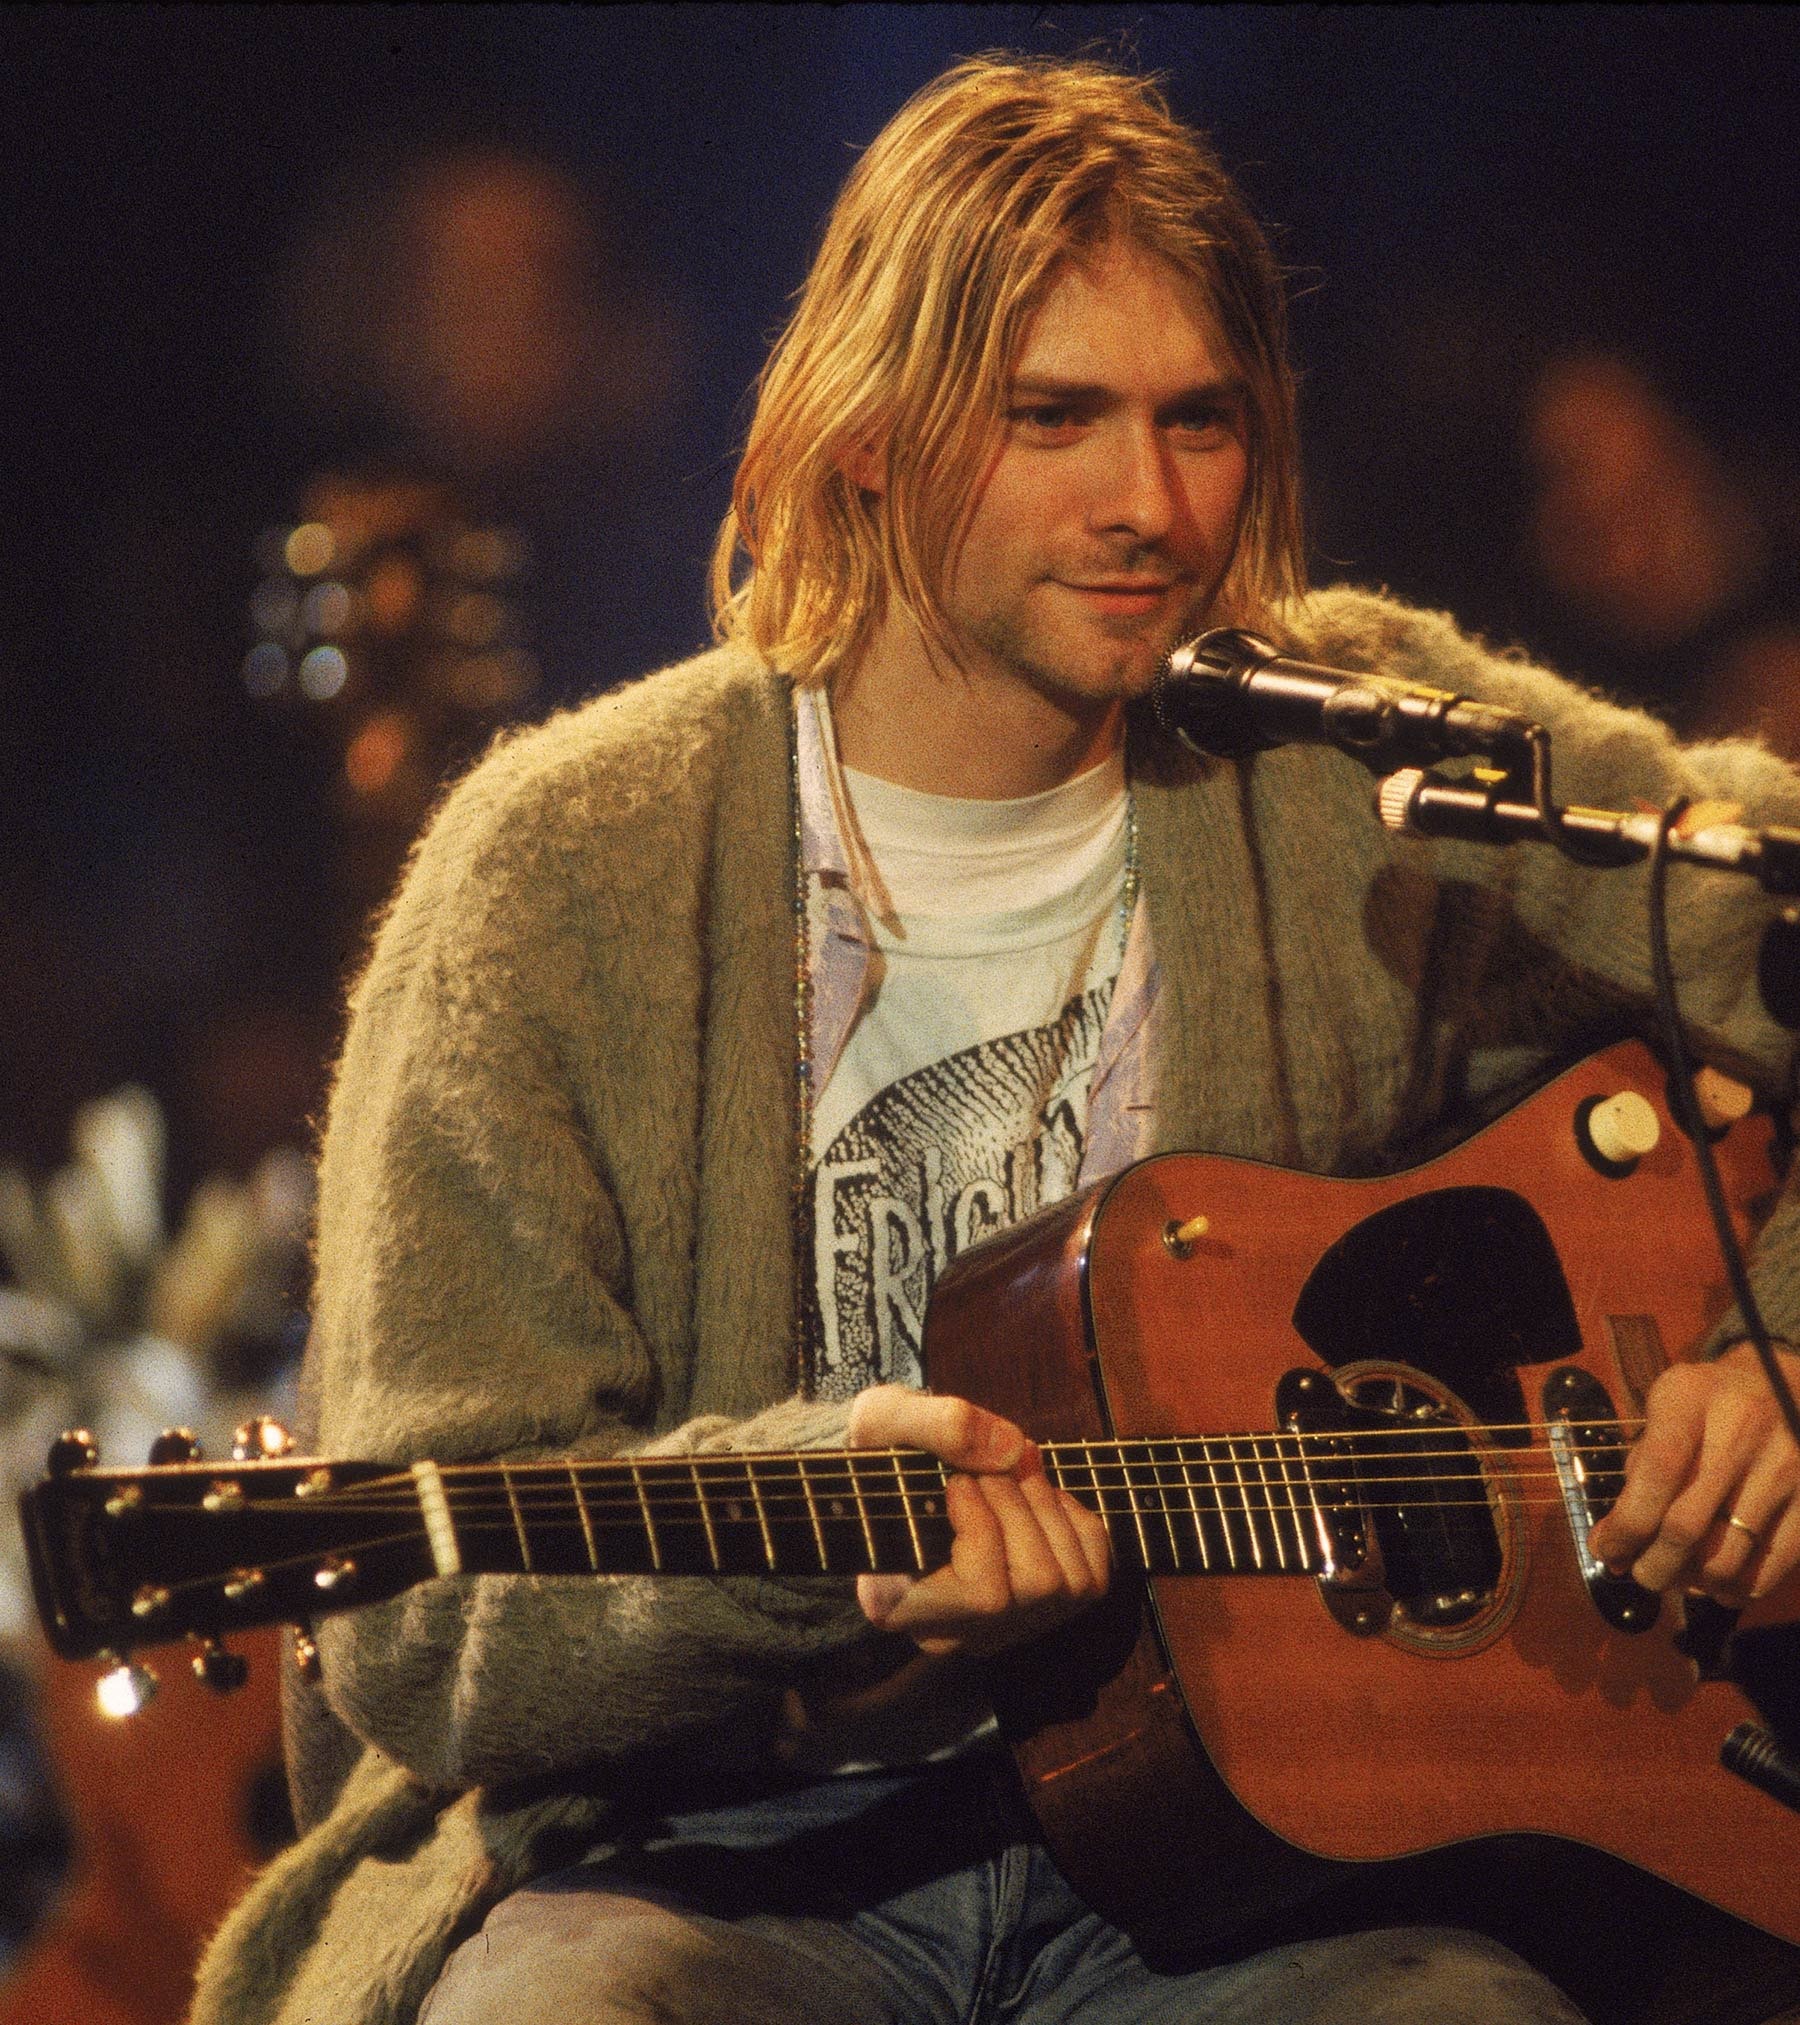 La legendaria guitarra del “MTV Unplugged” de Kurt Cobain fue subastada